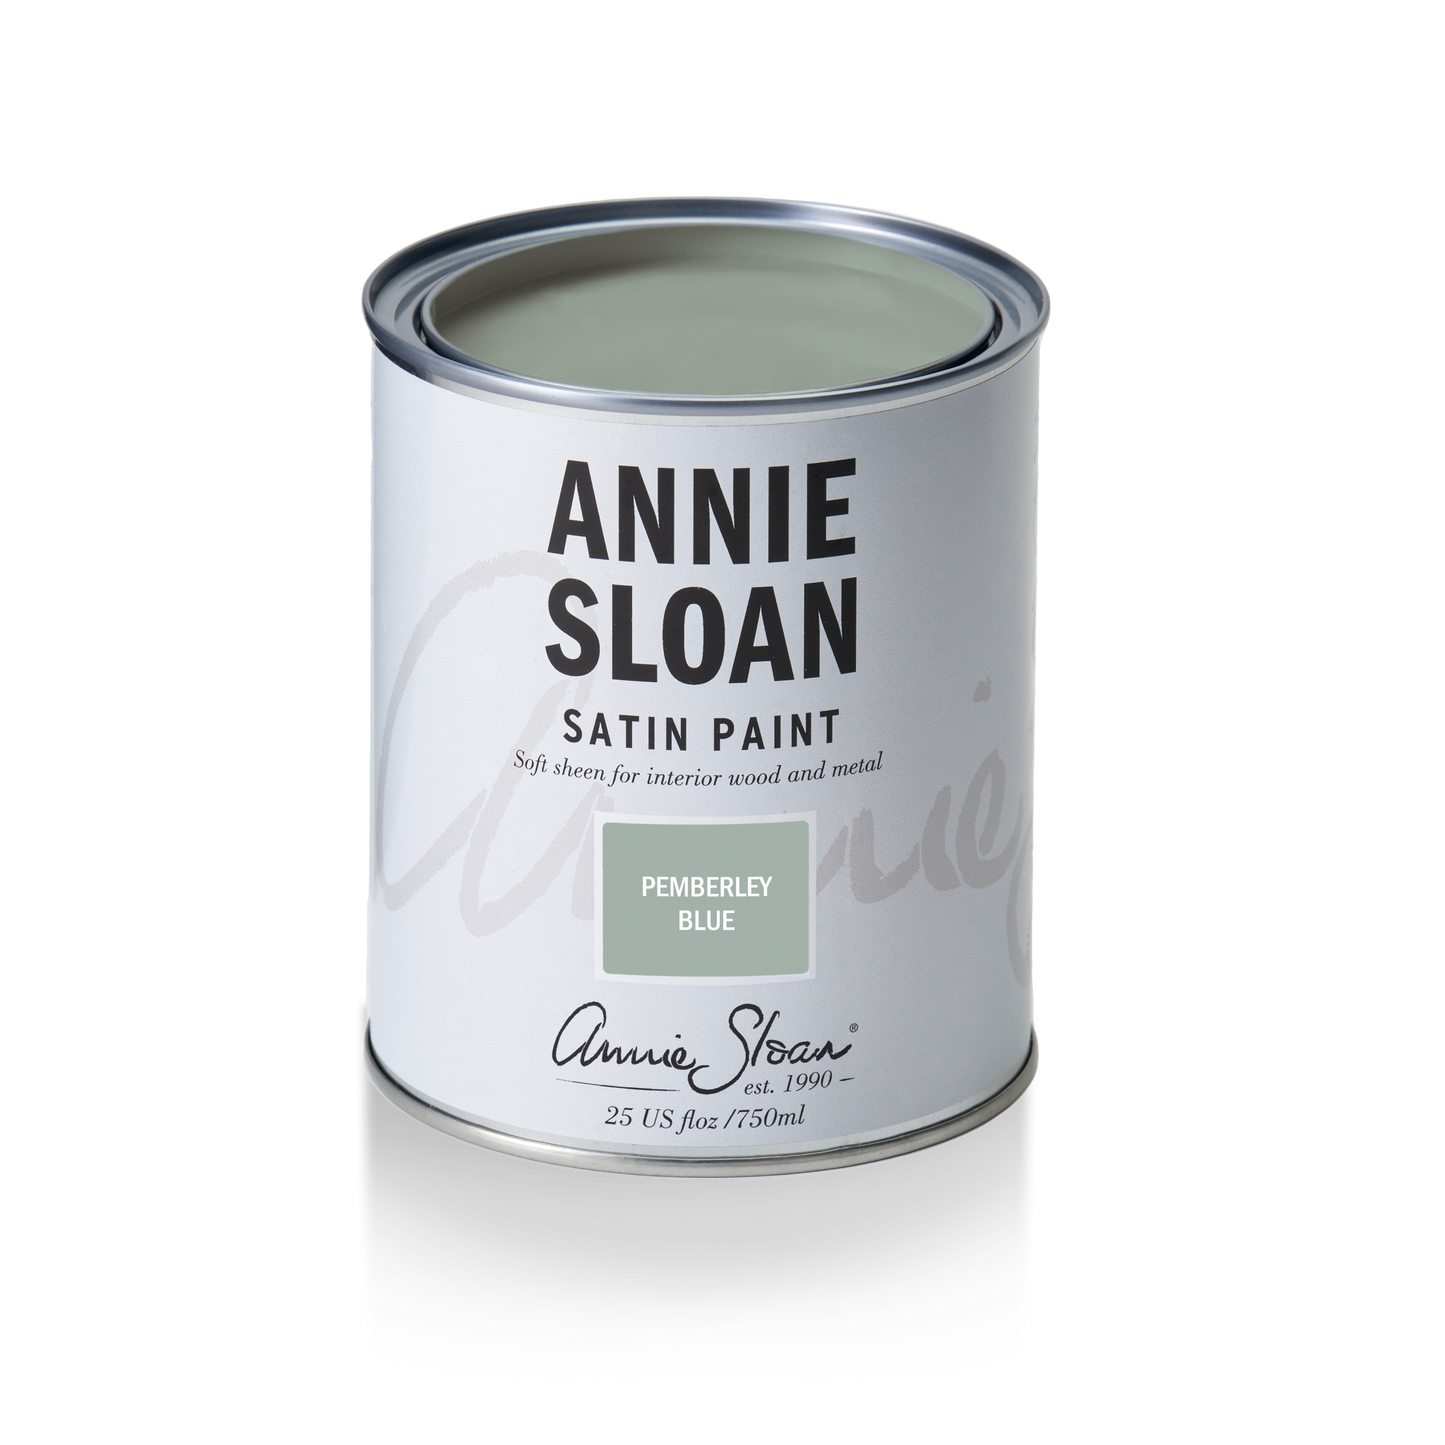 Annie Sloan Satin Paint Pemberley Blue, 750 ml Tin